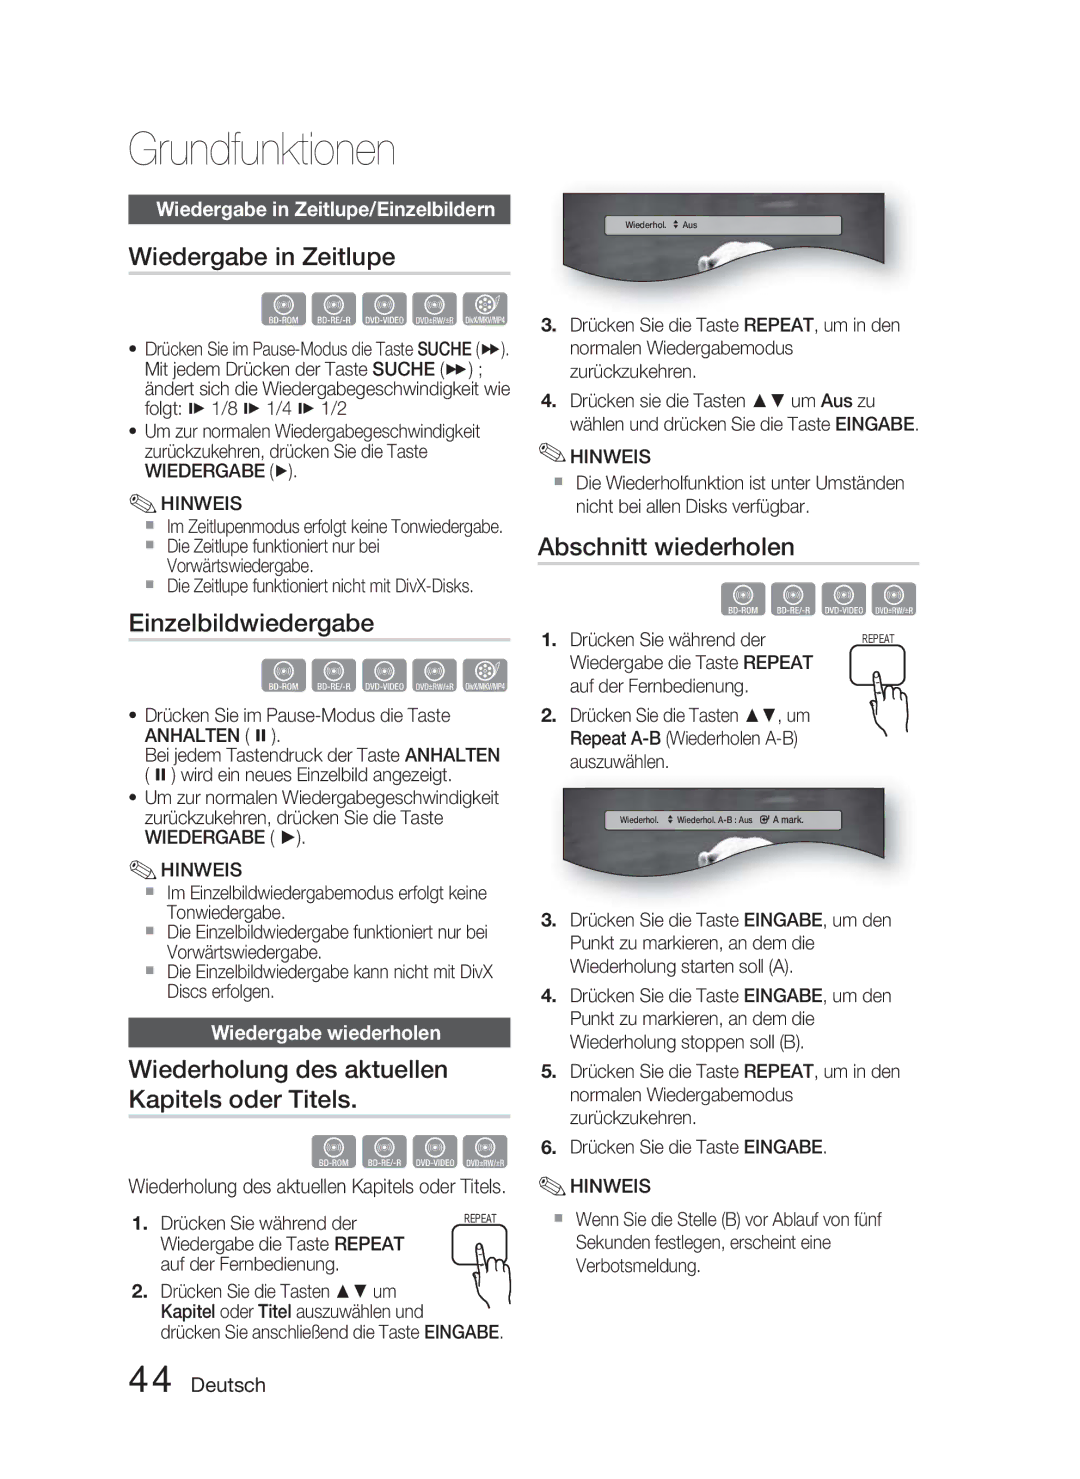 Samsung HT-C5800/XEE manual Wiedergabe in Zeitlupe, Einzelbildwiedergabe, Wiederholung des aktuellen Kapitels oder Titels 